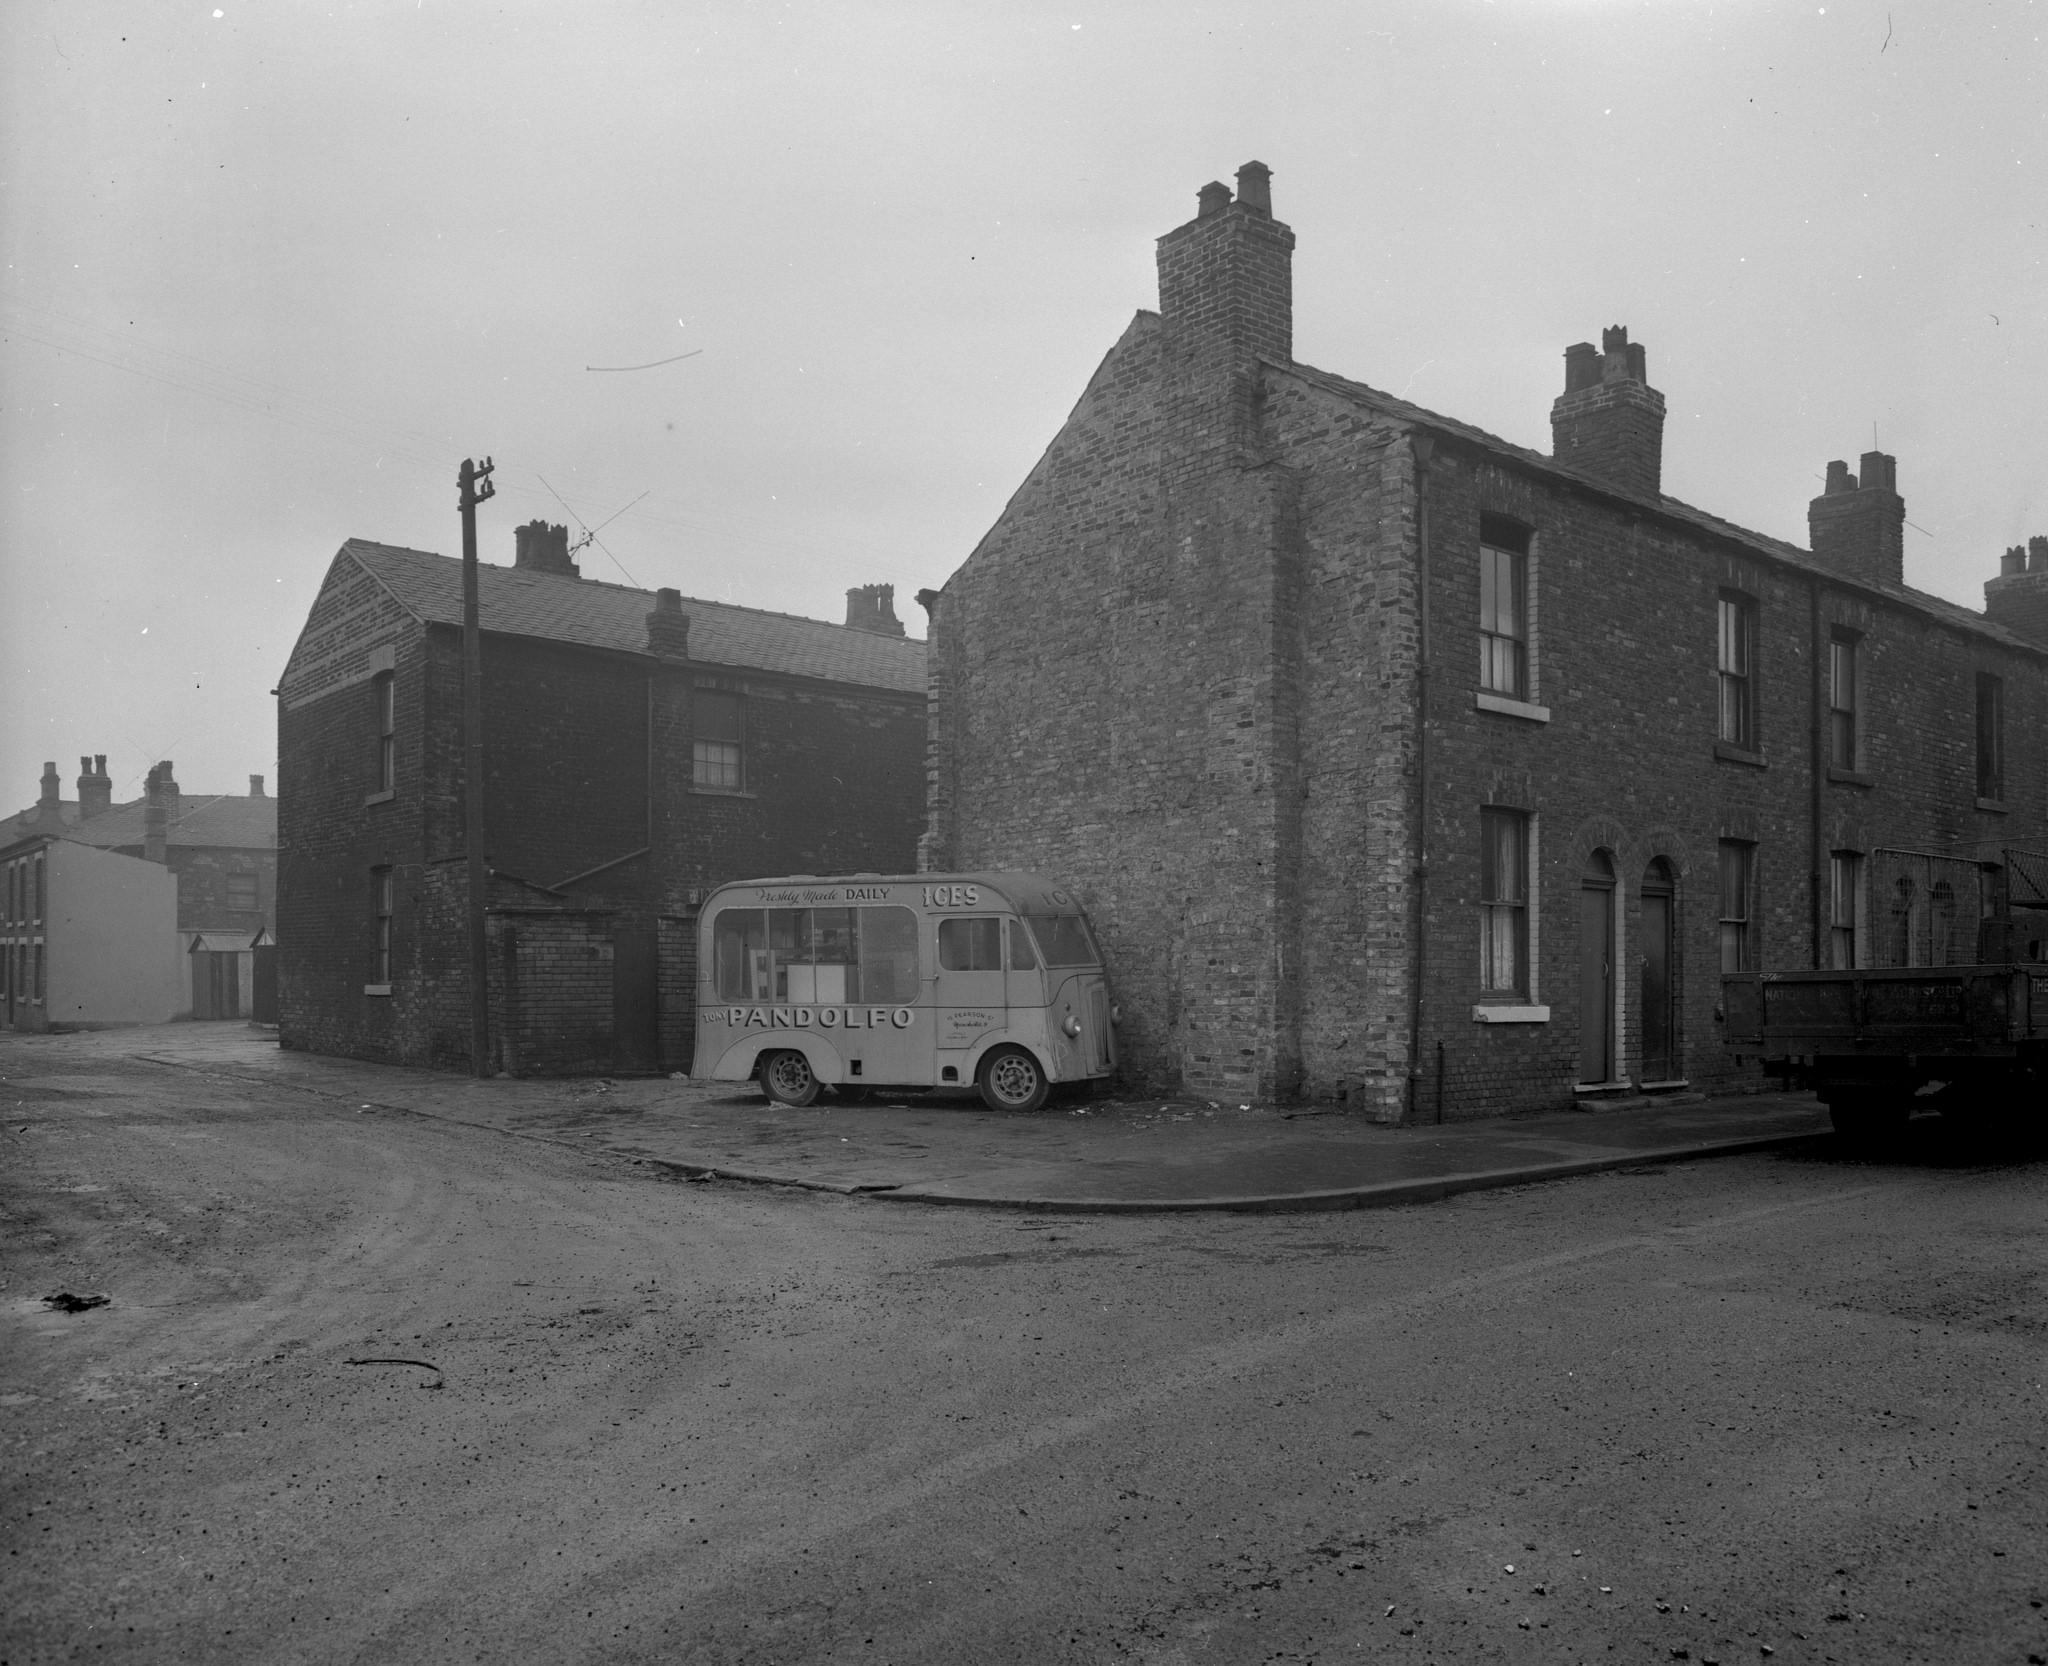 Photographies de Manchester – 1963